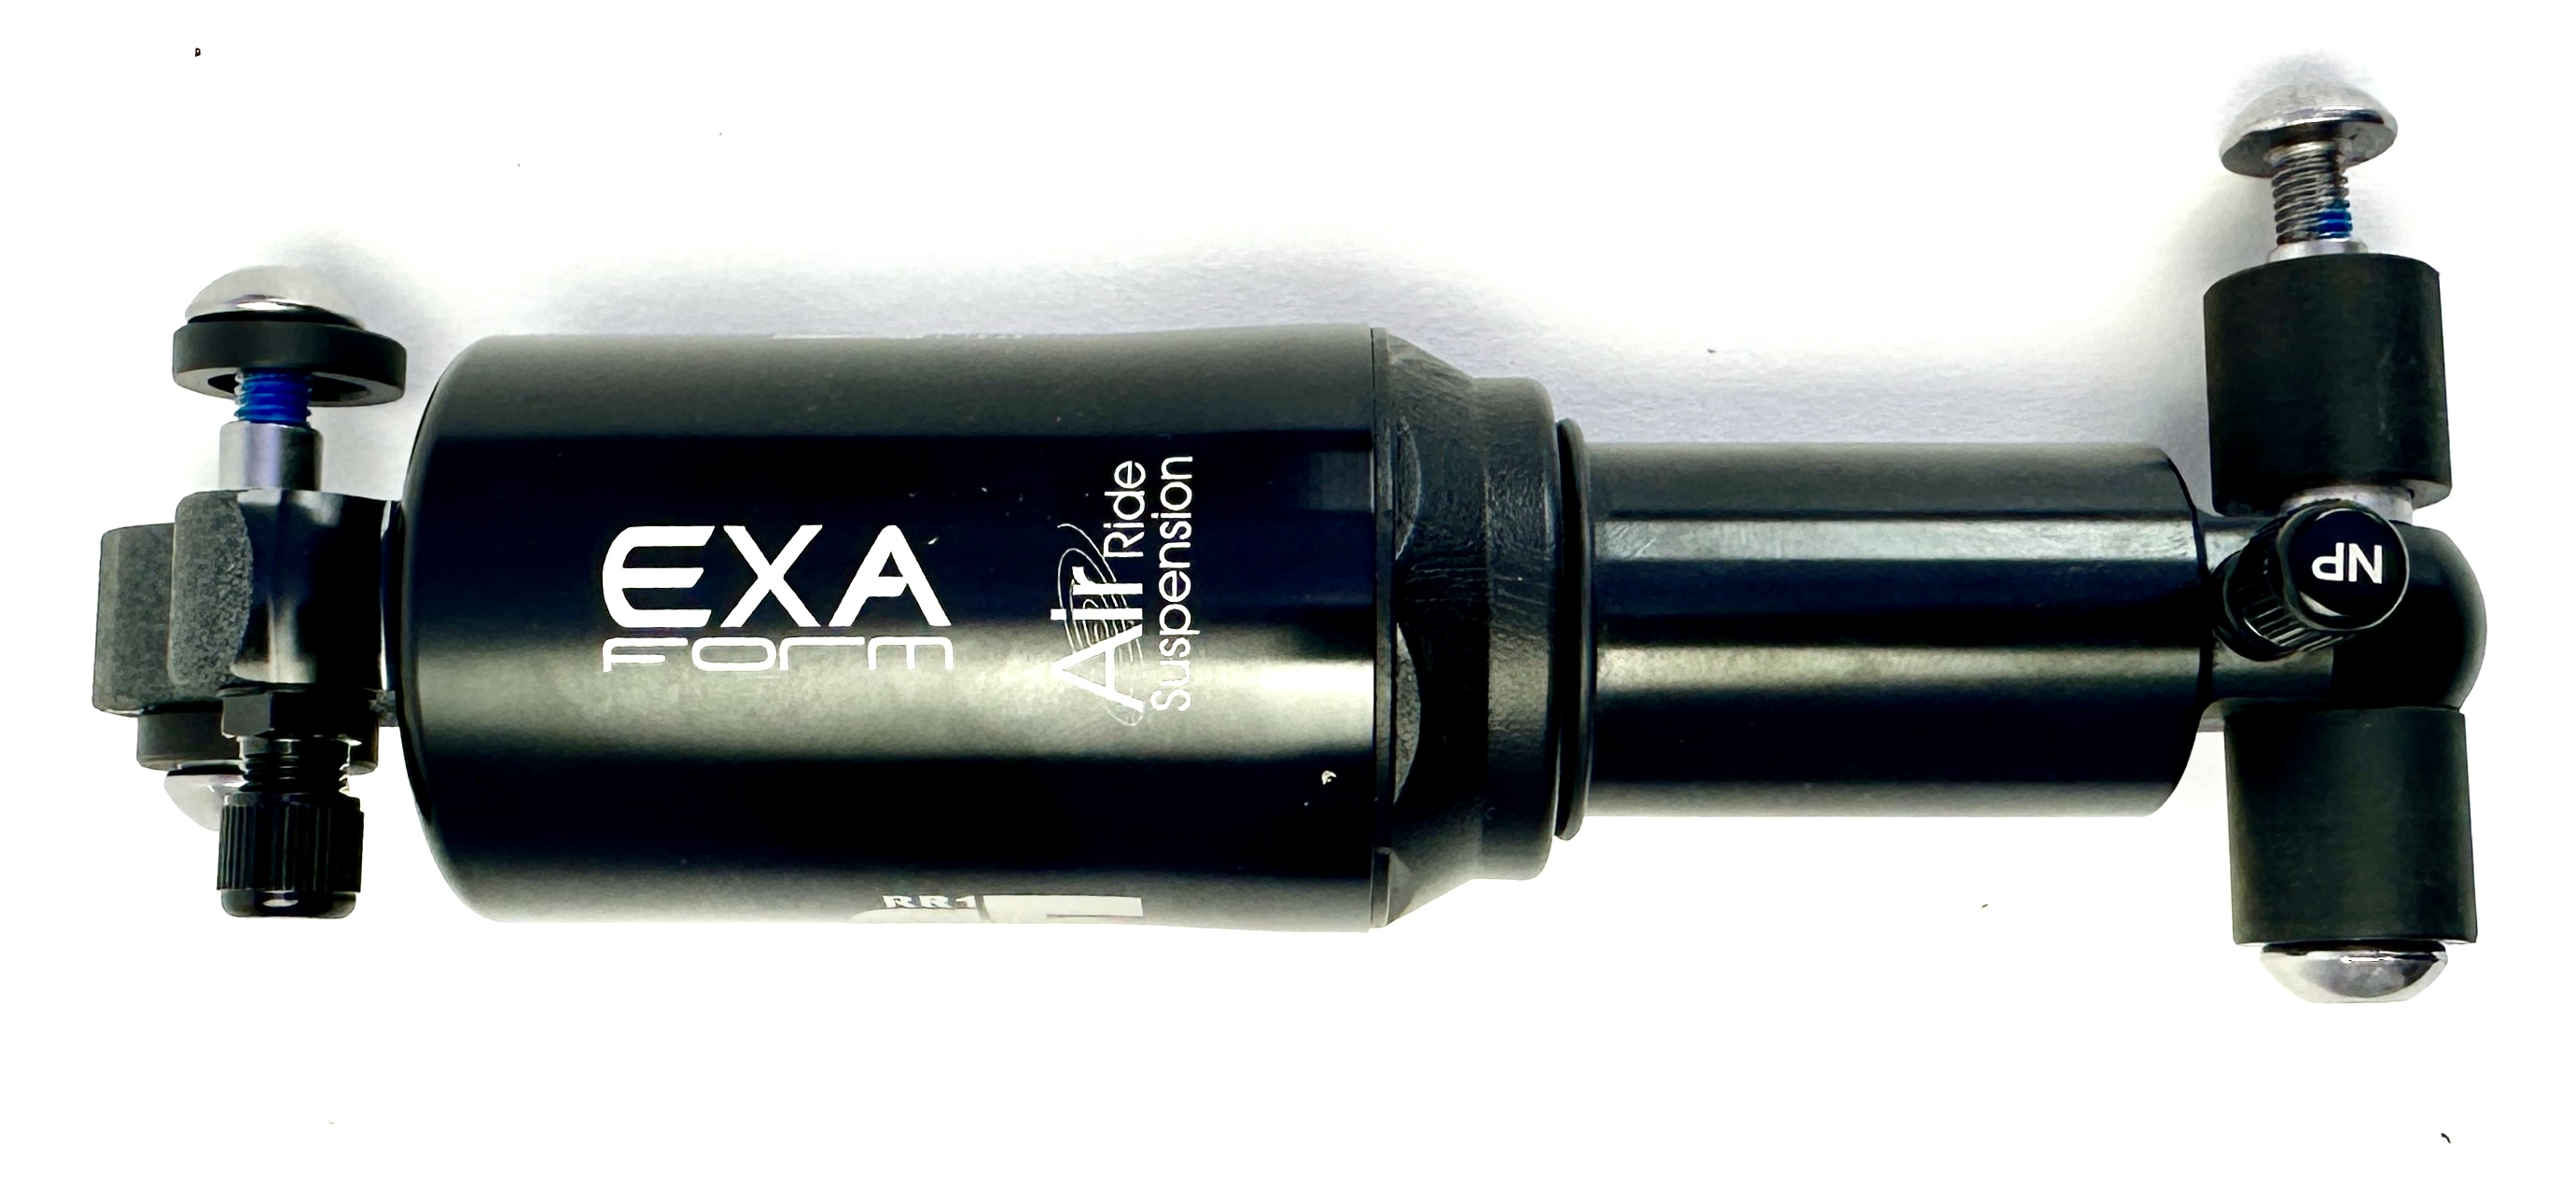 Ammortizzatore EXA Form A5RR1 di Kindshock